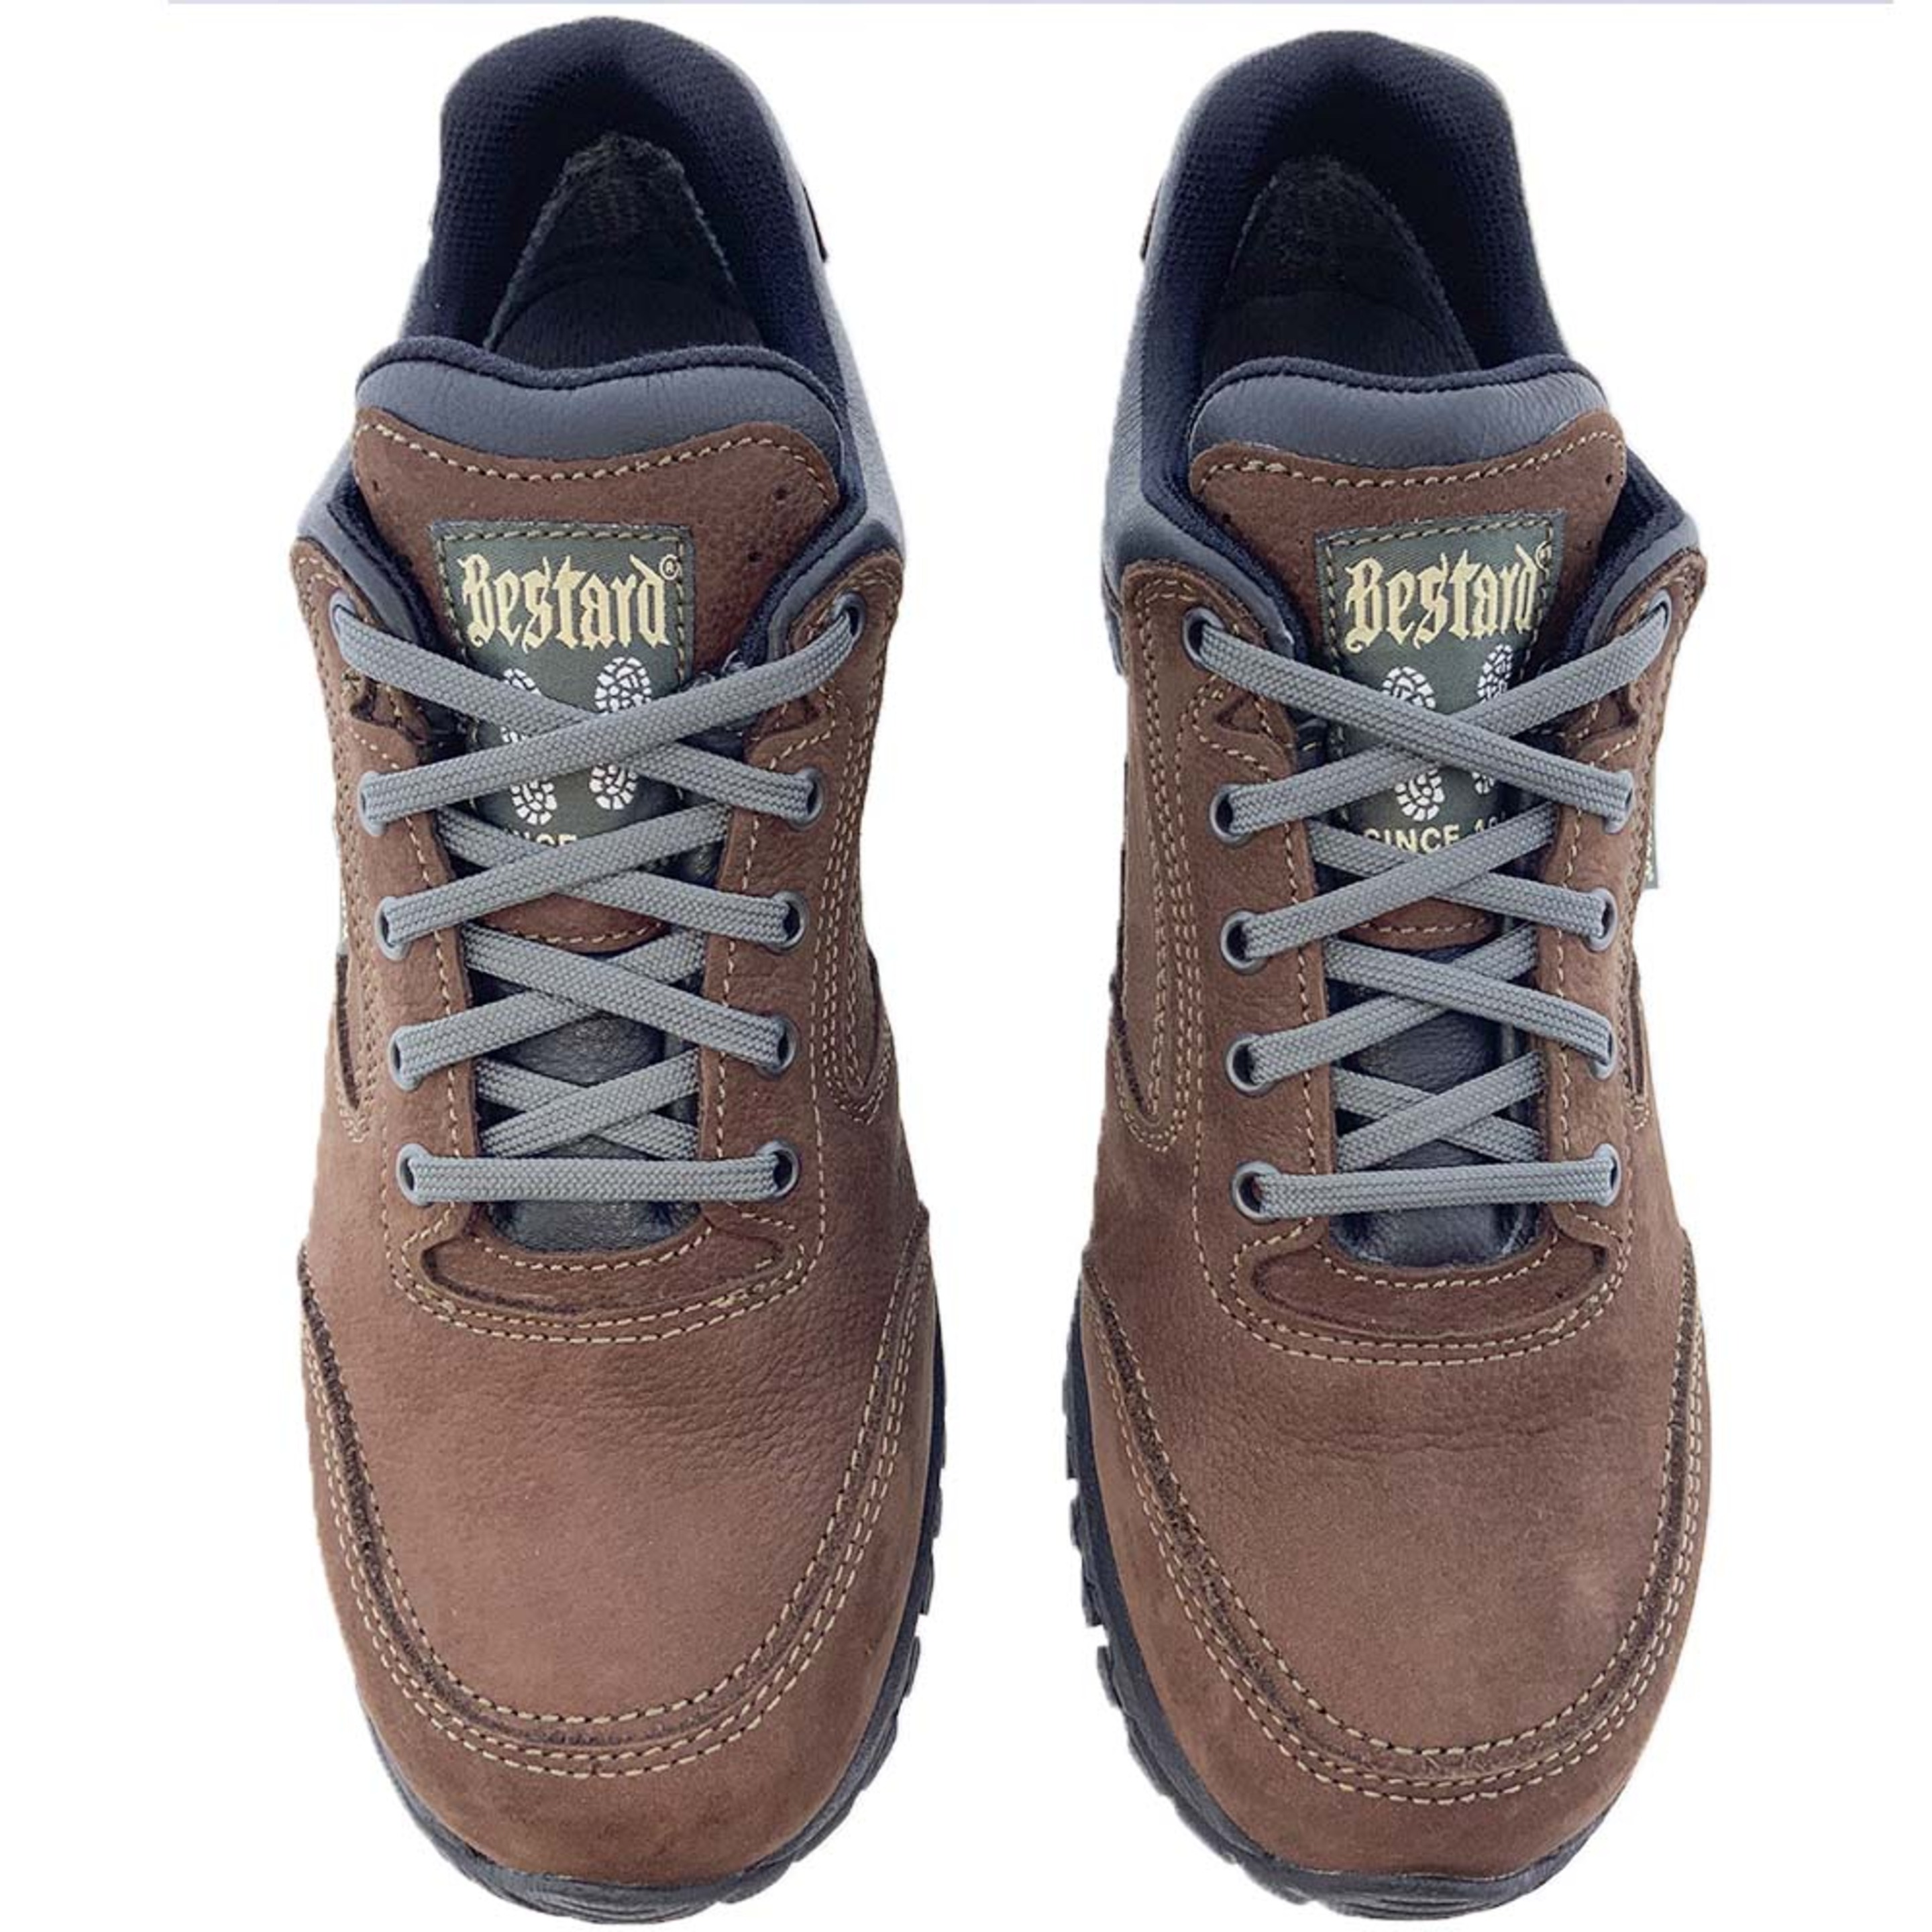 Sapatilhas Impermeável Bestard Oxford Gore-tex 0914 - Preto - Sapatos para caminhadas e trekking para homens | Sport Zone MKP